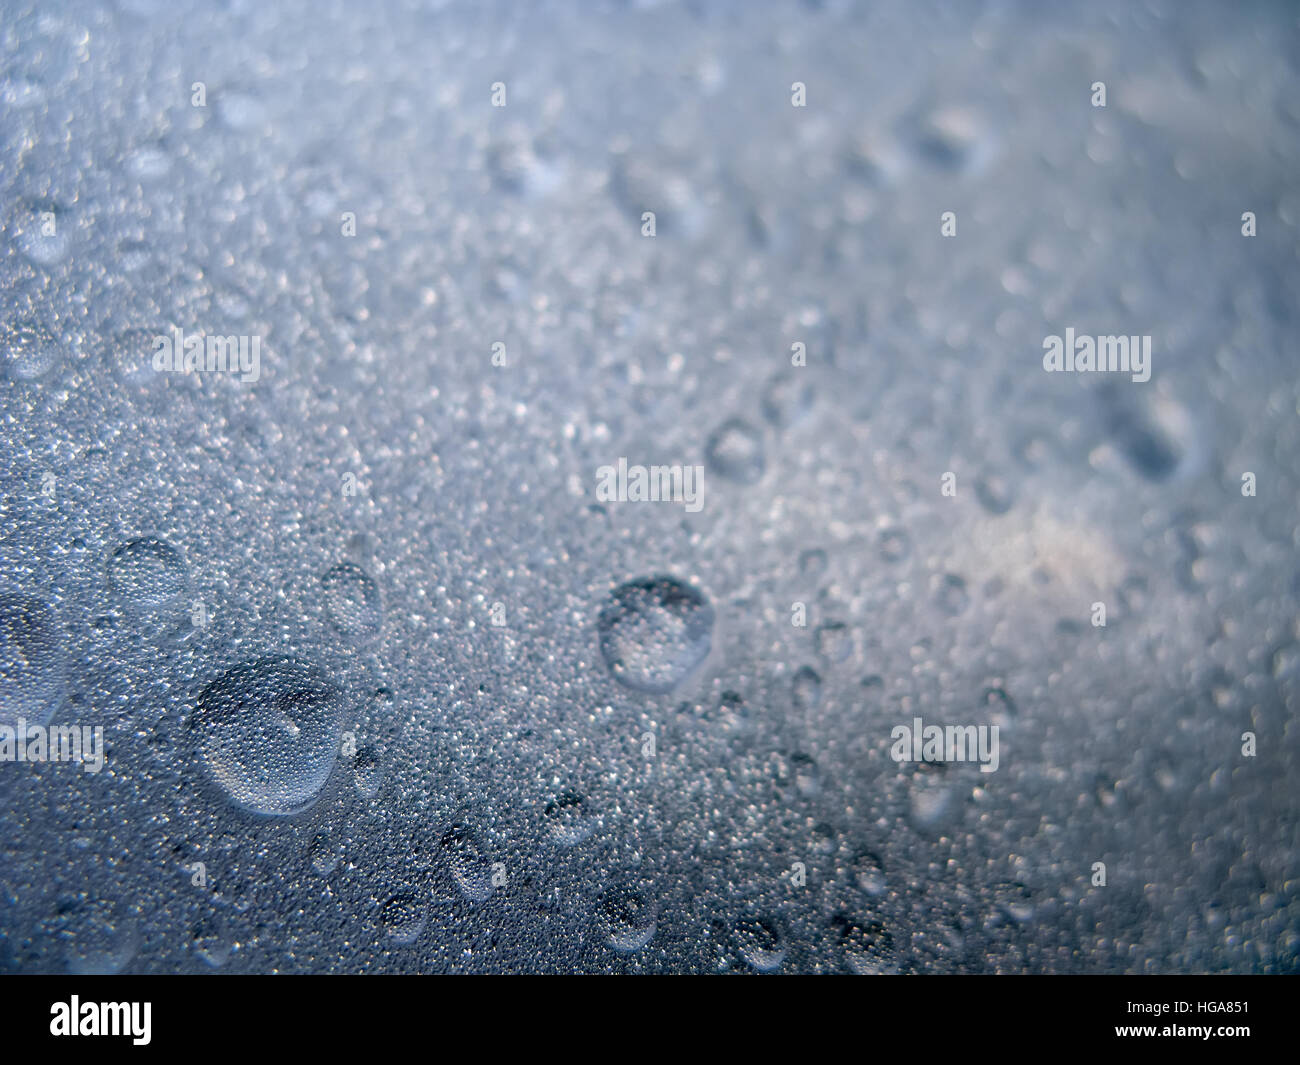 La texture de fond de gouttes d'eau et les gouttelettes sur une surface en verre avec couvercle Banque D'Images